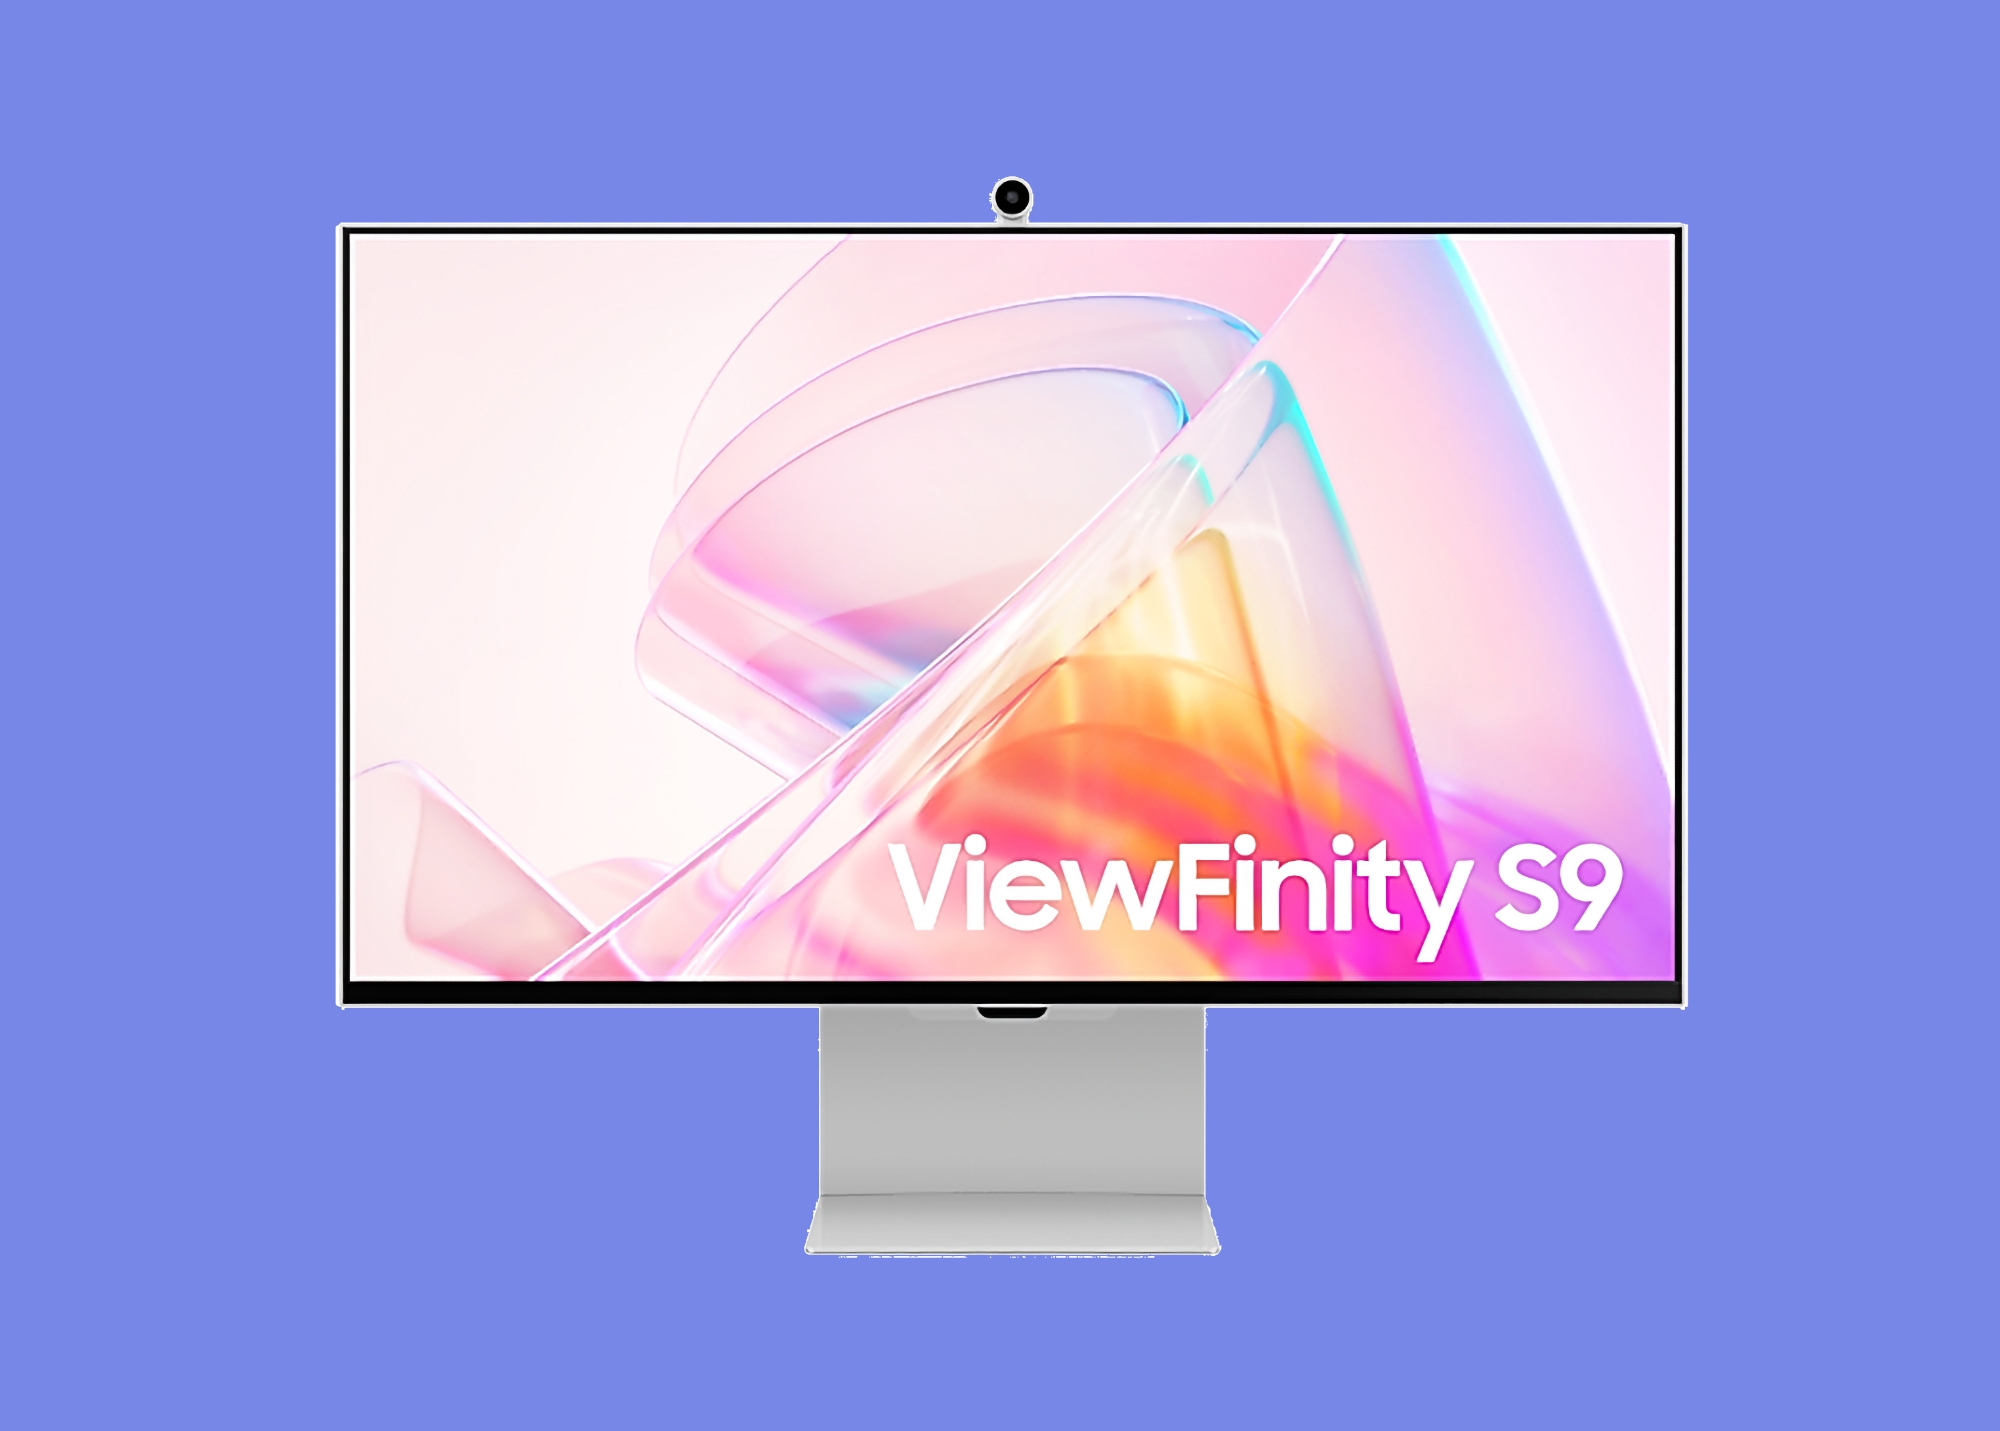 Rabatten er $ 704: Samsung ViewFinity S9 med matt skjerm, webkamera og Tizen TV OS er tilgjengelig på Amazon til en kampanjepris 